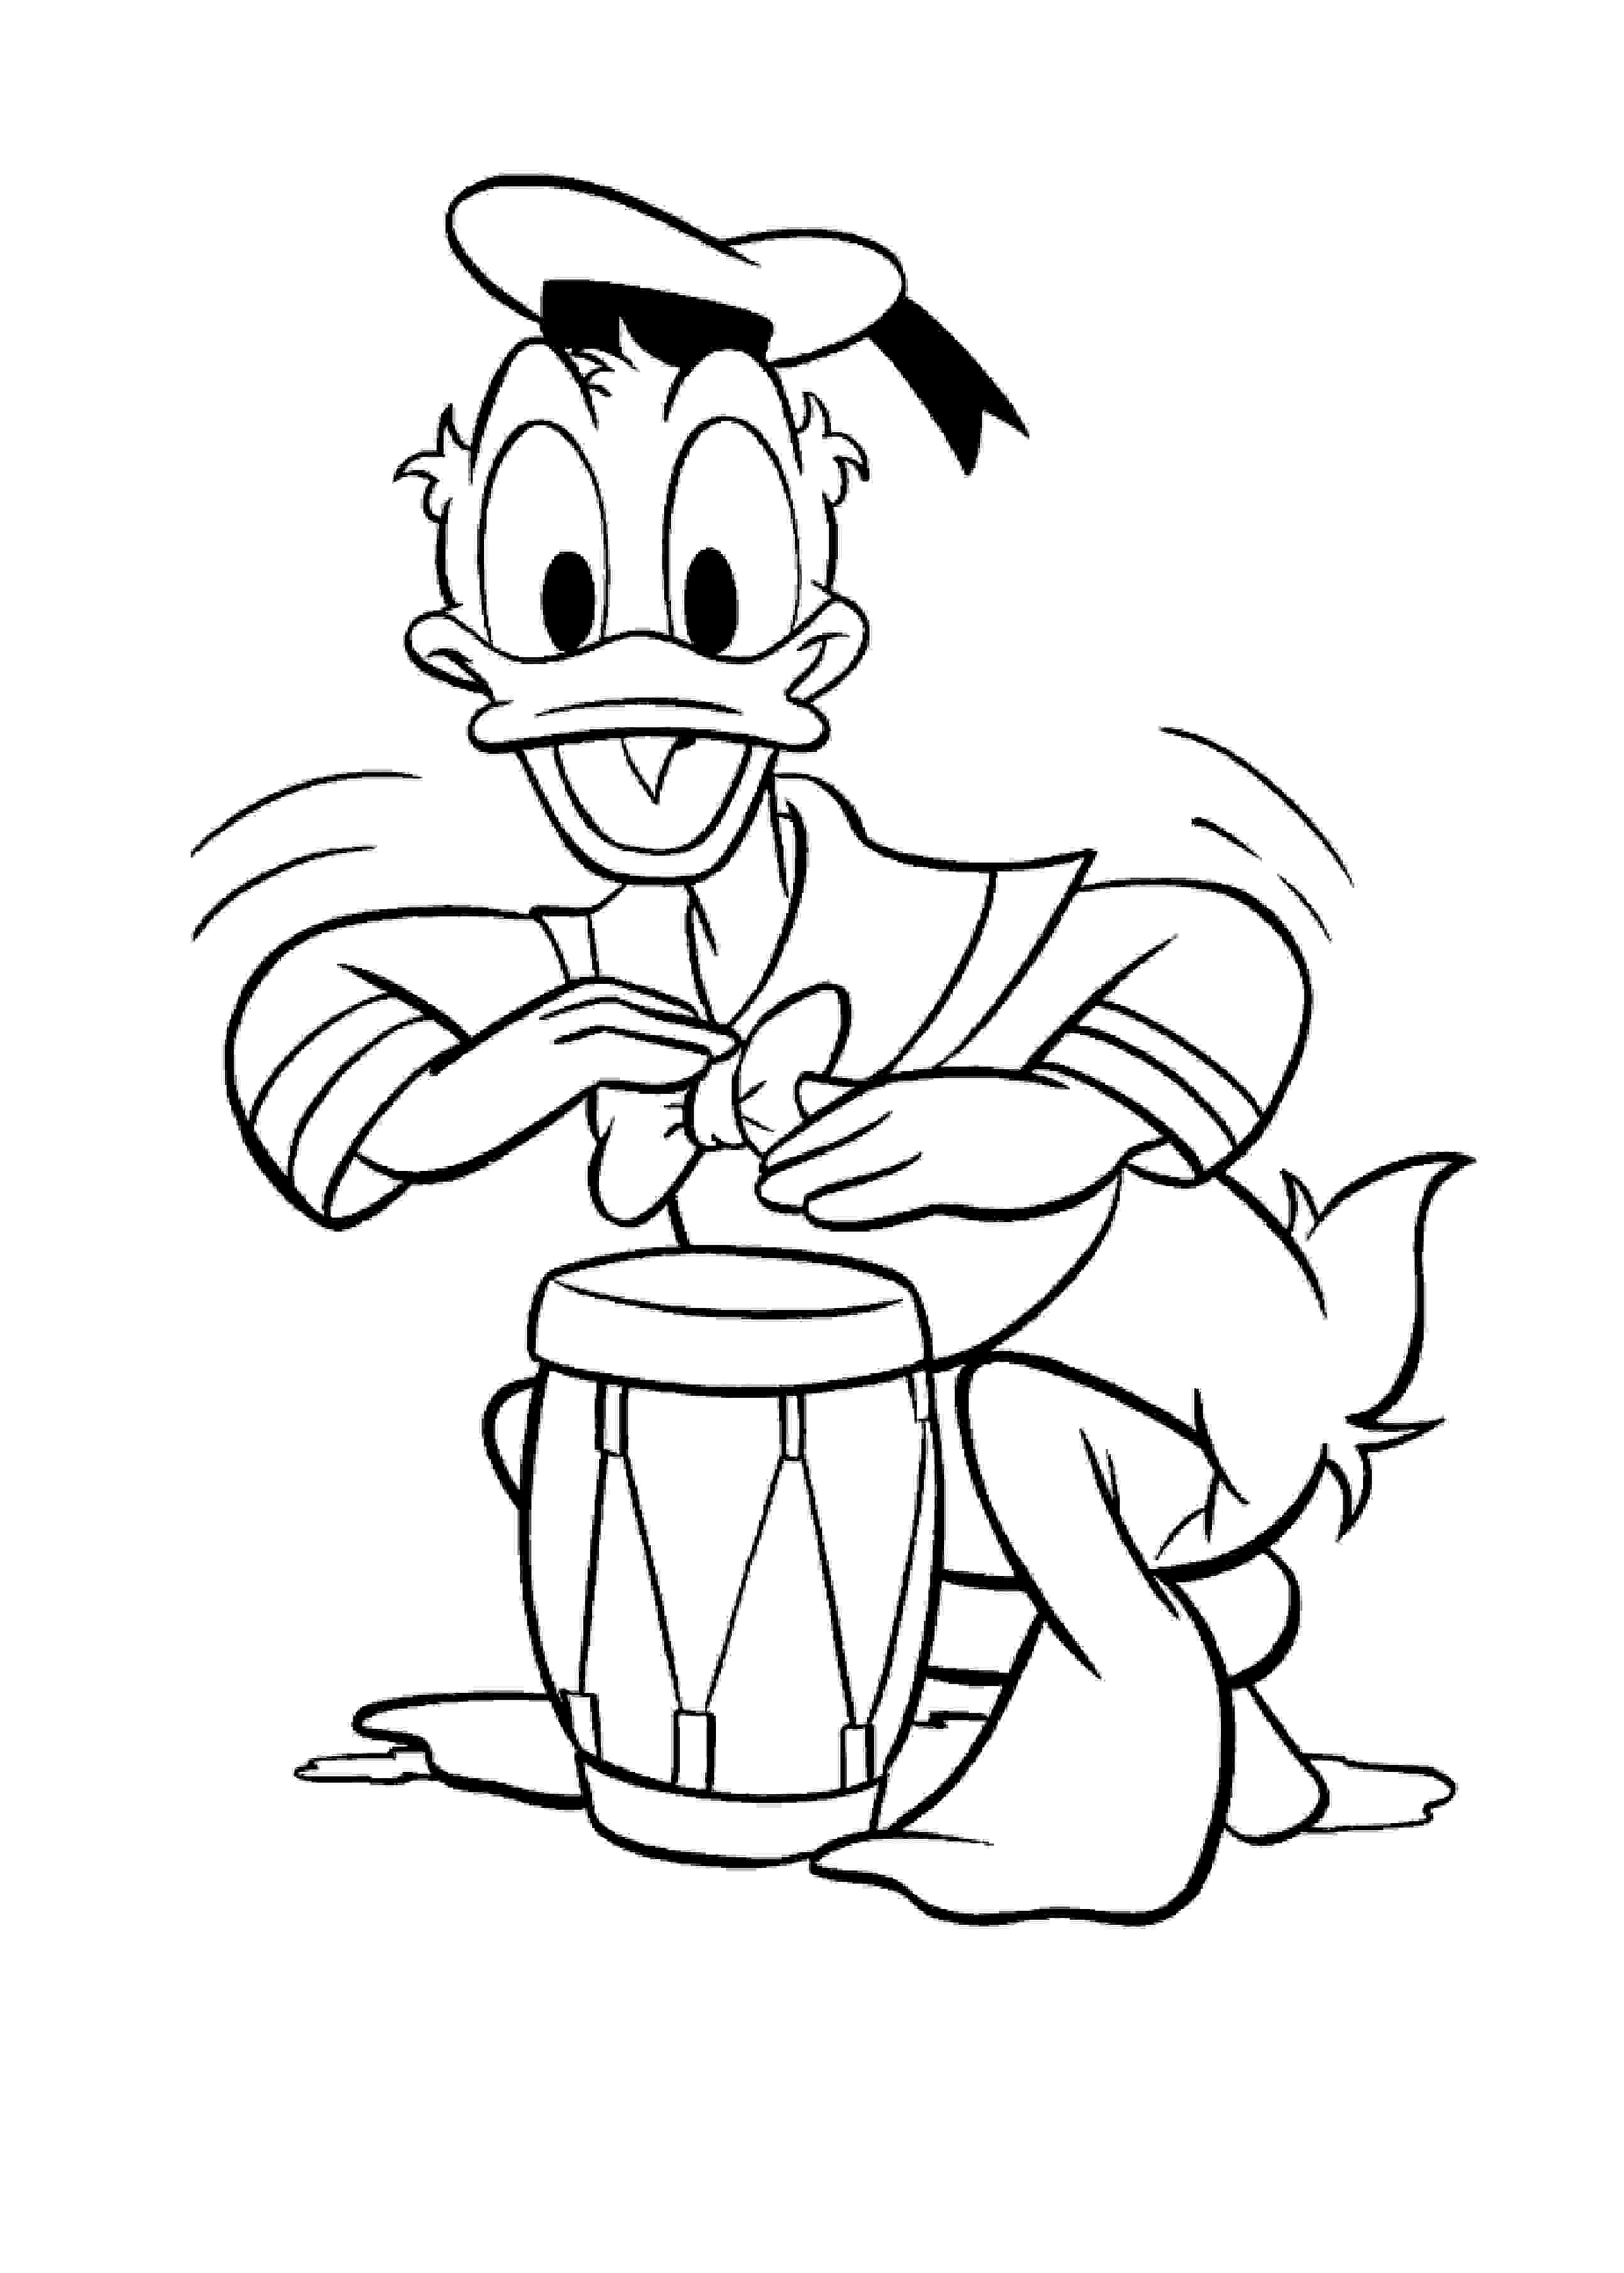 Donald (Disney) toca el tambor